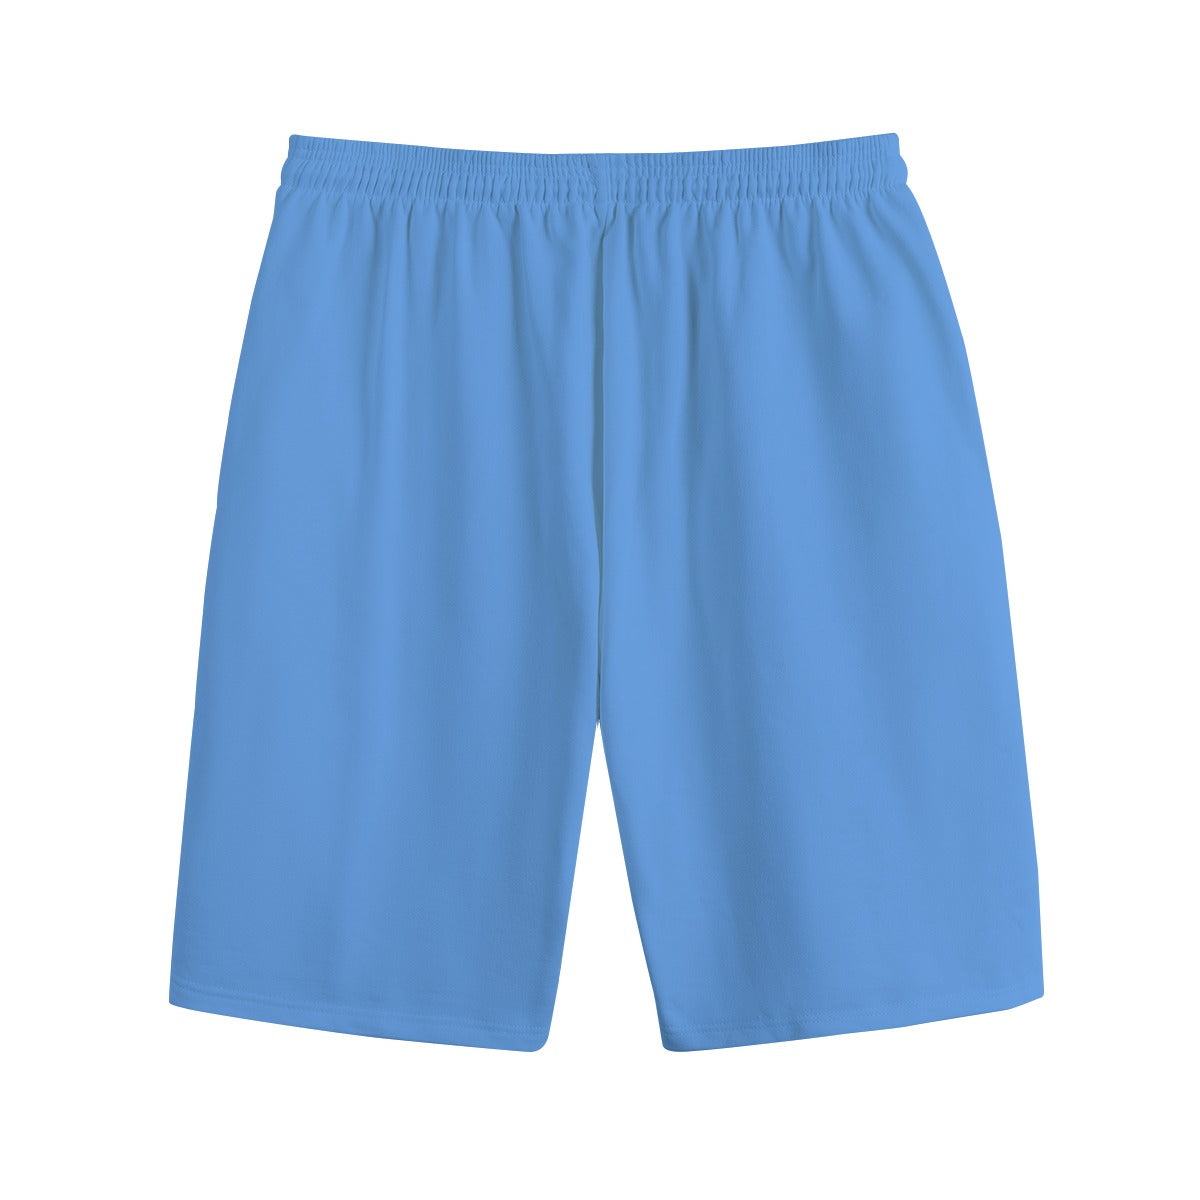 - AM&IS Men's Carolina Blue Shorts | 100% Cotton - mens shorts at TFC&H Co.